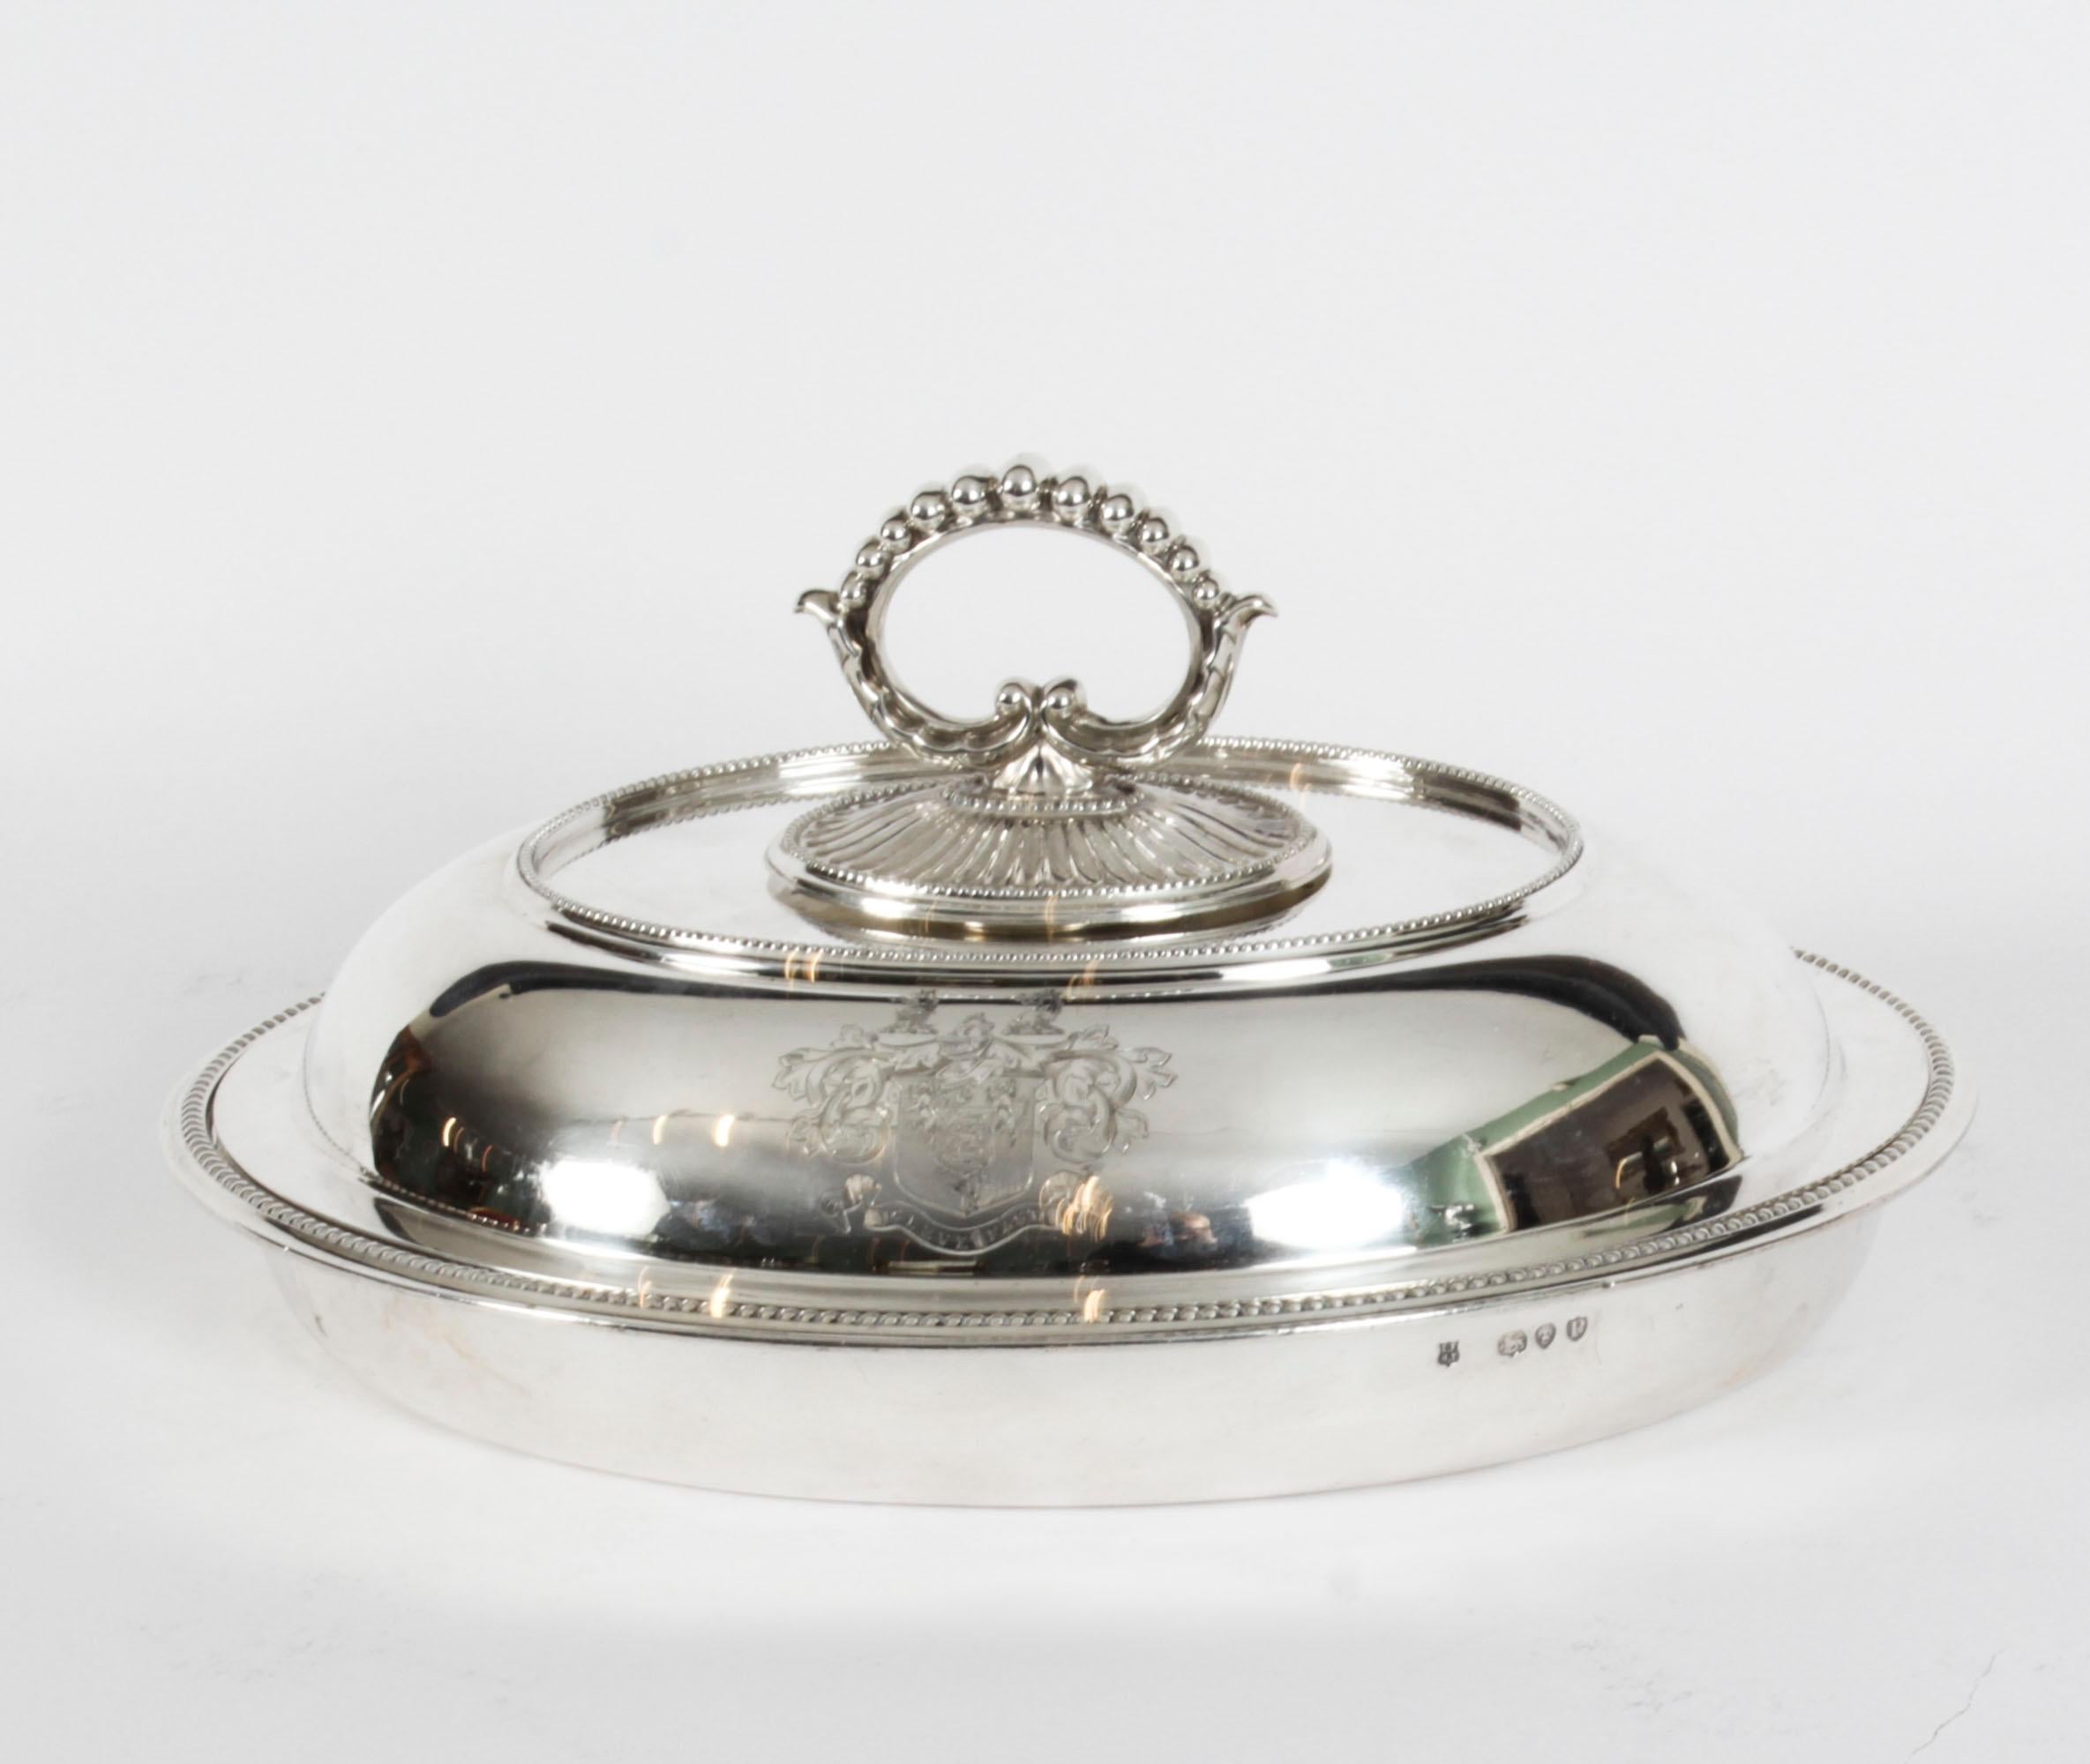 Dies ist eine wunderbare Reihe von vier englischen antiken Sterling Silber Entree Gerichte und Abdeckungen mit Punzierungen für Finley & Taylor, Birmingham und datiert 1890 mit einem Gewicht von 207 ozs.
 
Die geformten ovalen Schalen sind mit